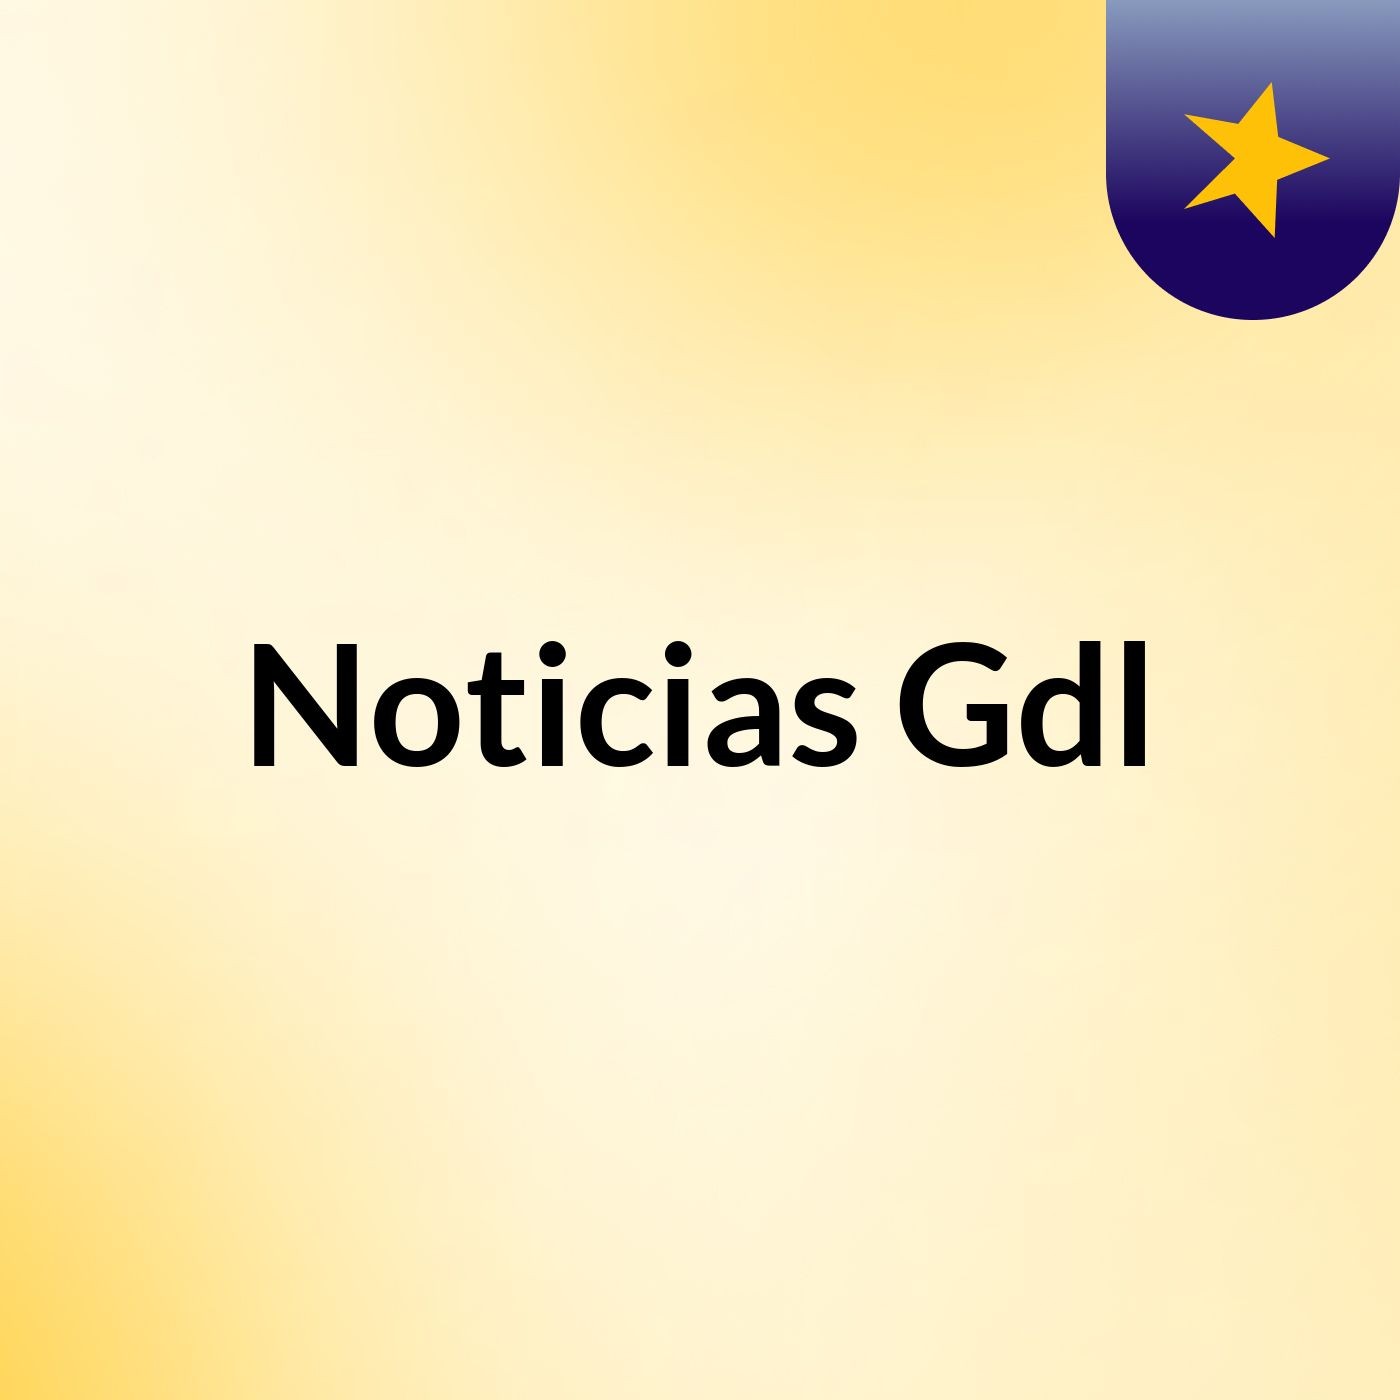 Noticias Gdl